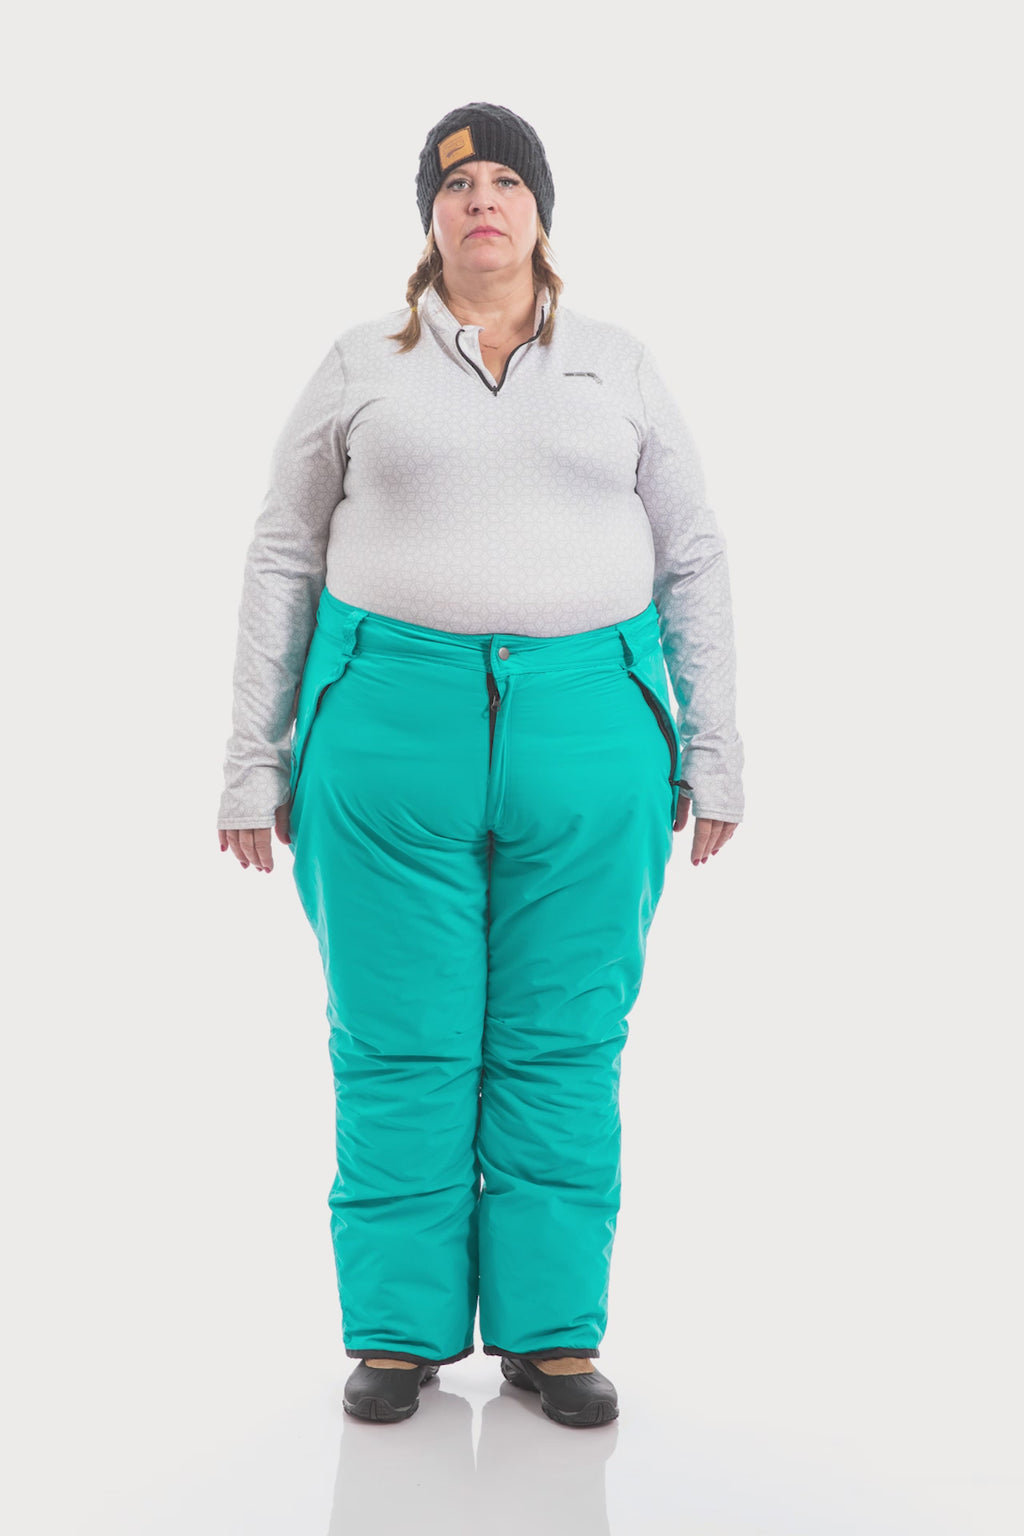 12 Best Plus-Size Snow Pants for Women 2023 - Parade